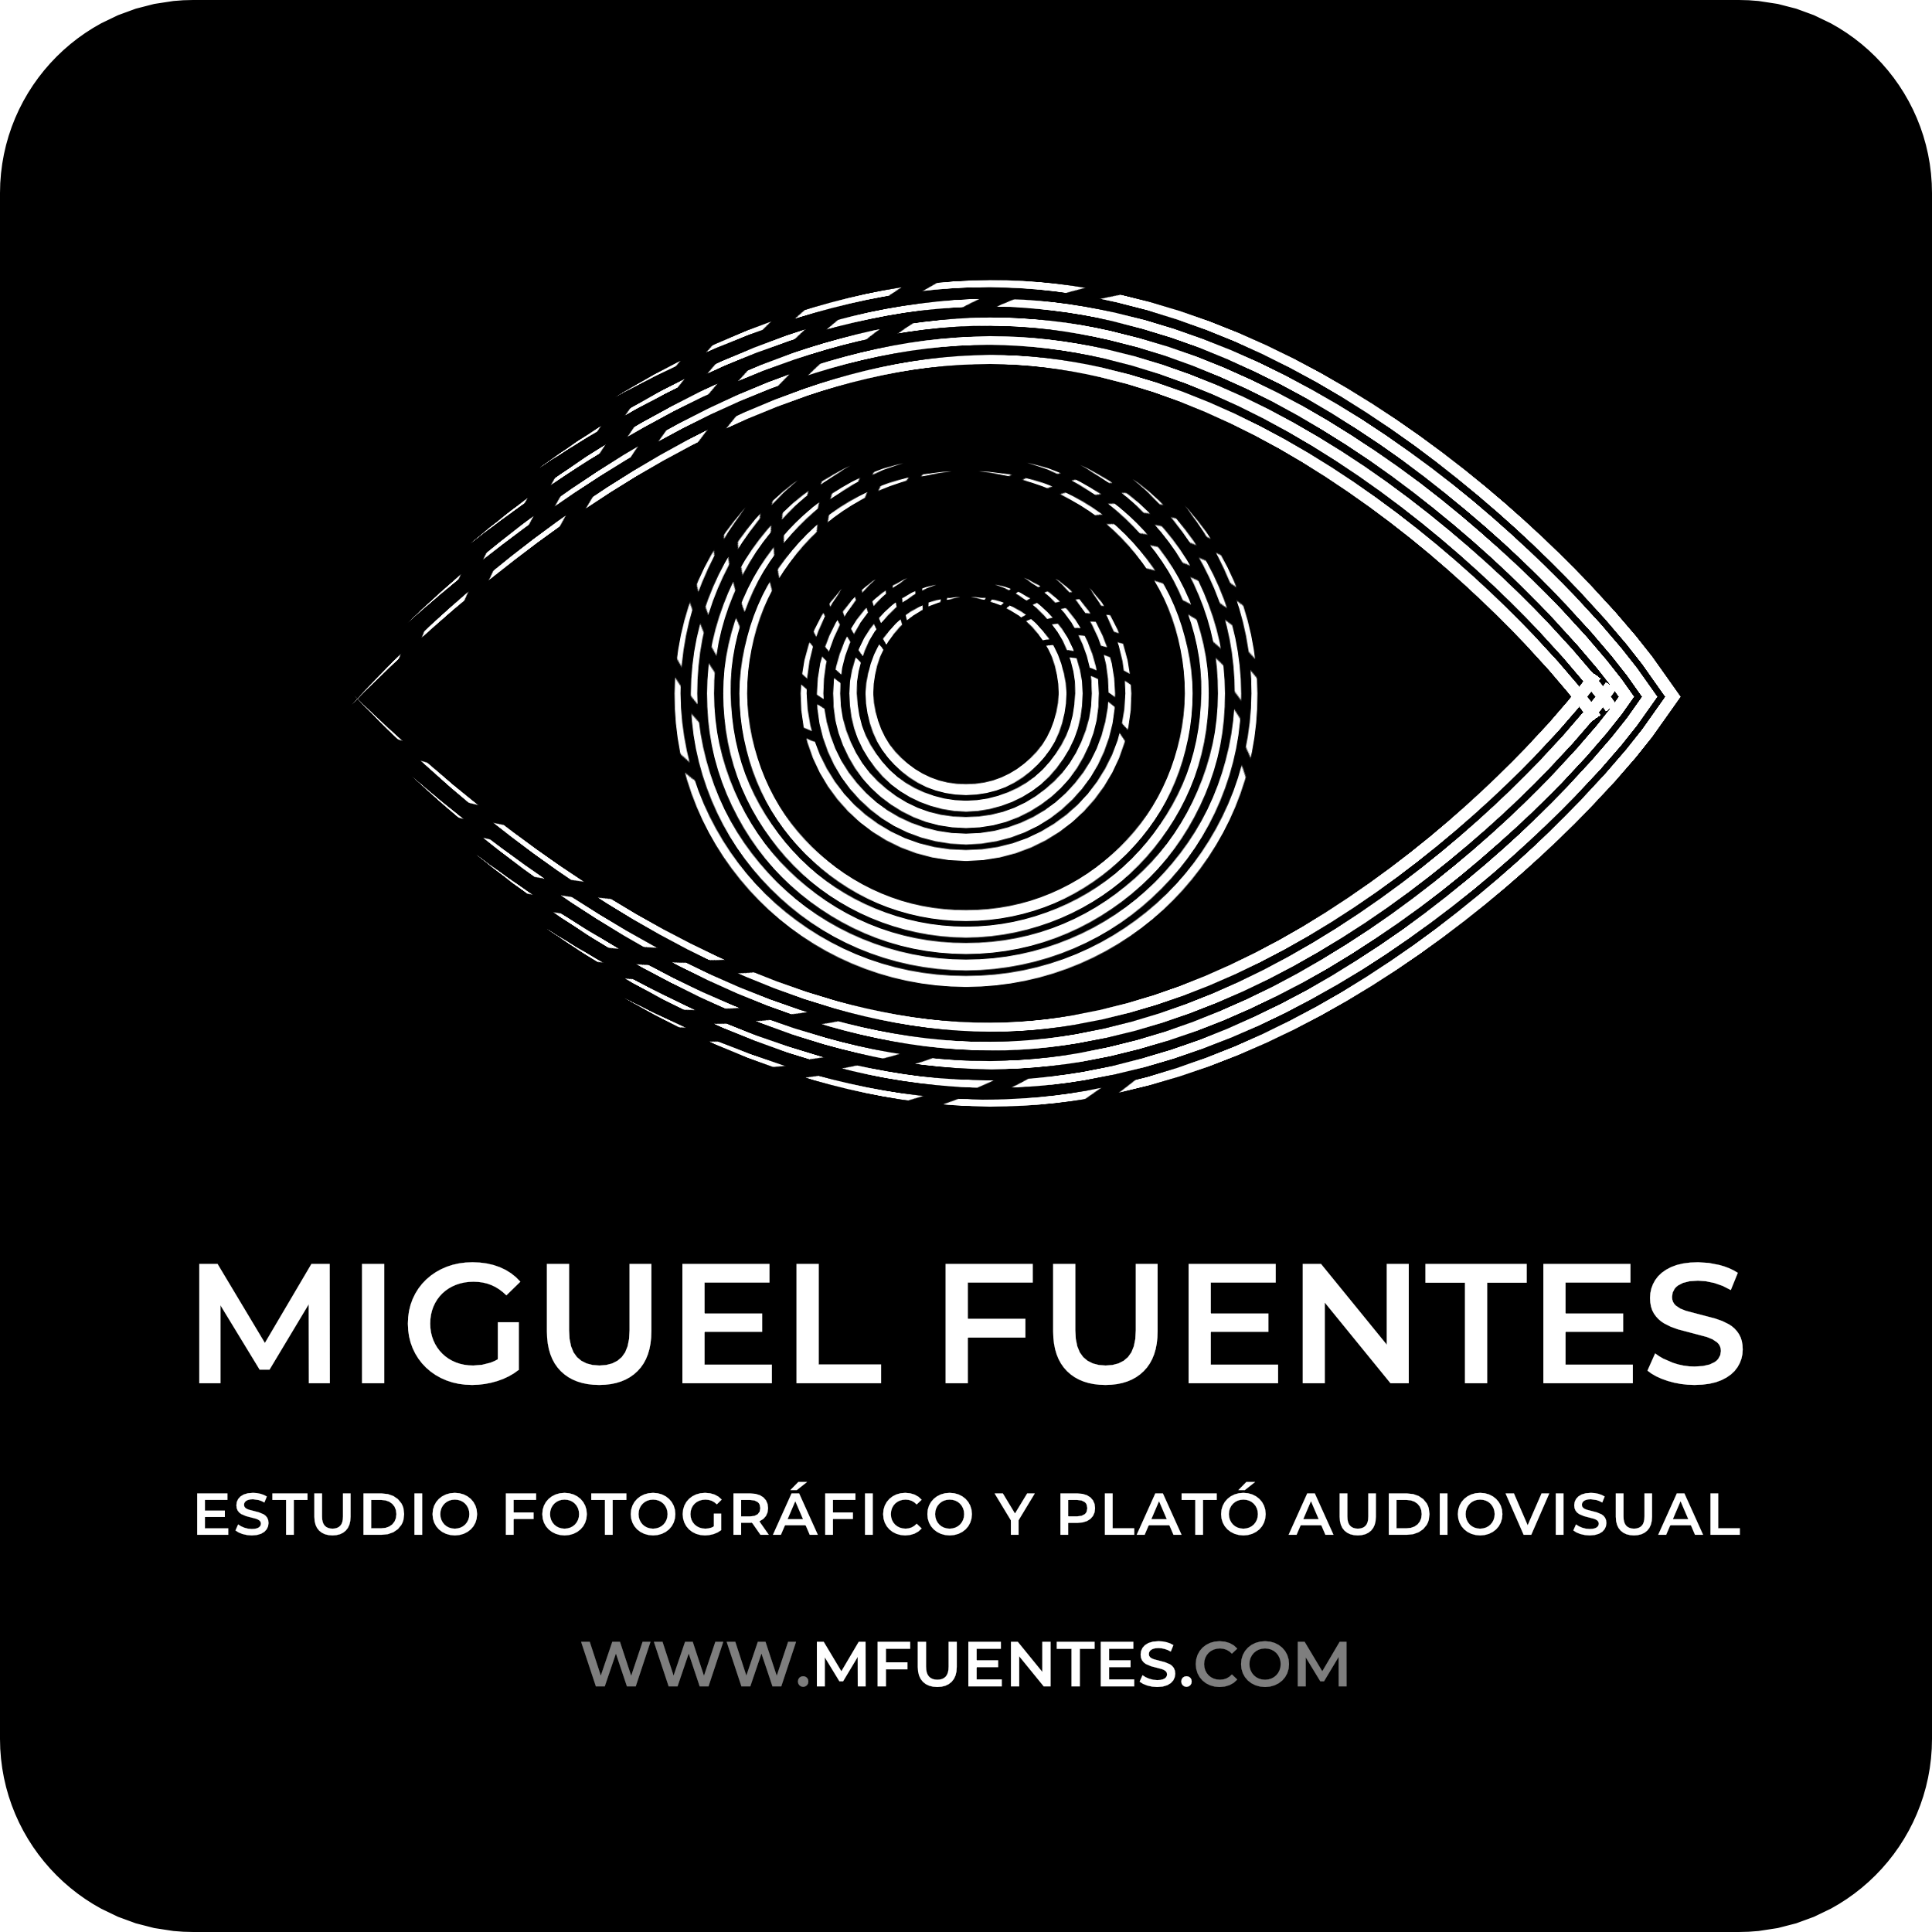 Diseño del logotipo y página web de Miguel Fuentes, estudio fotográfico y Plató Audiovisual en Zaragoza de LCS Audiovisual, servicios de Diseño Gráfico y Web LCS Audiovisual